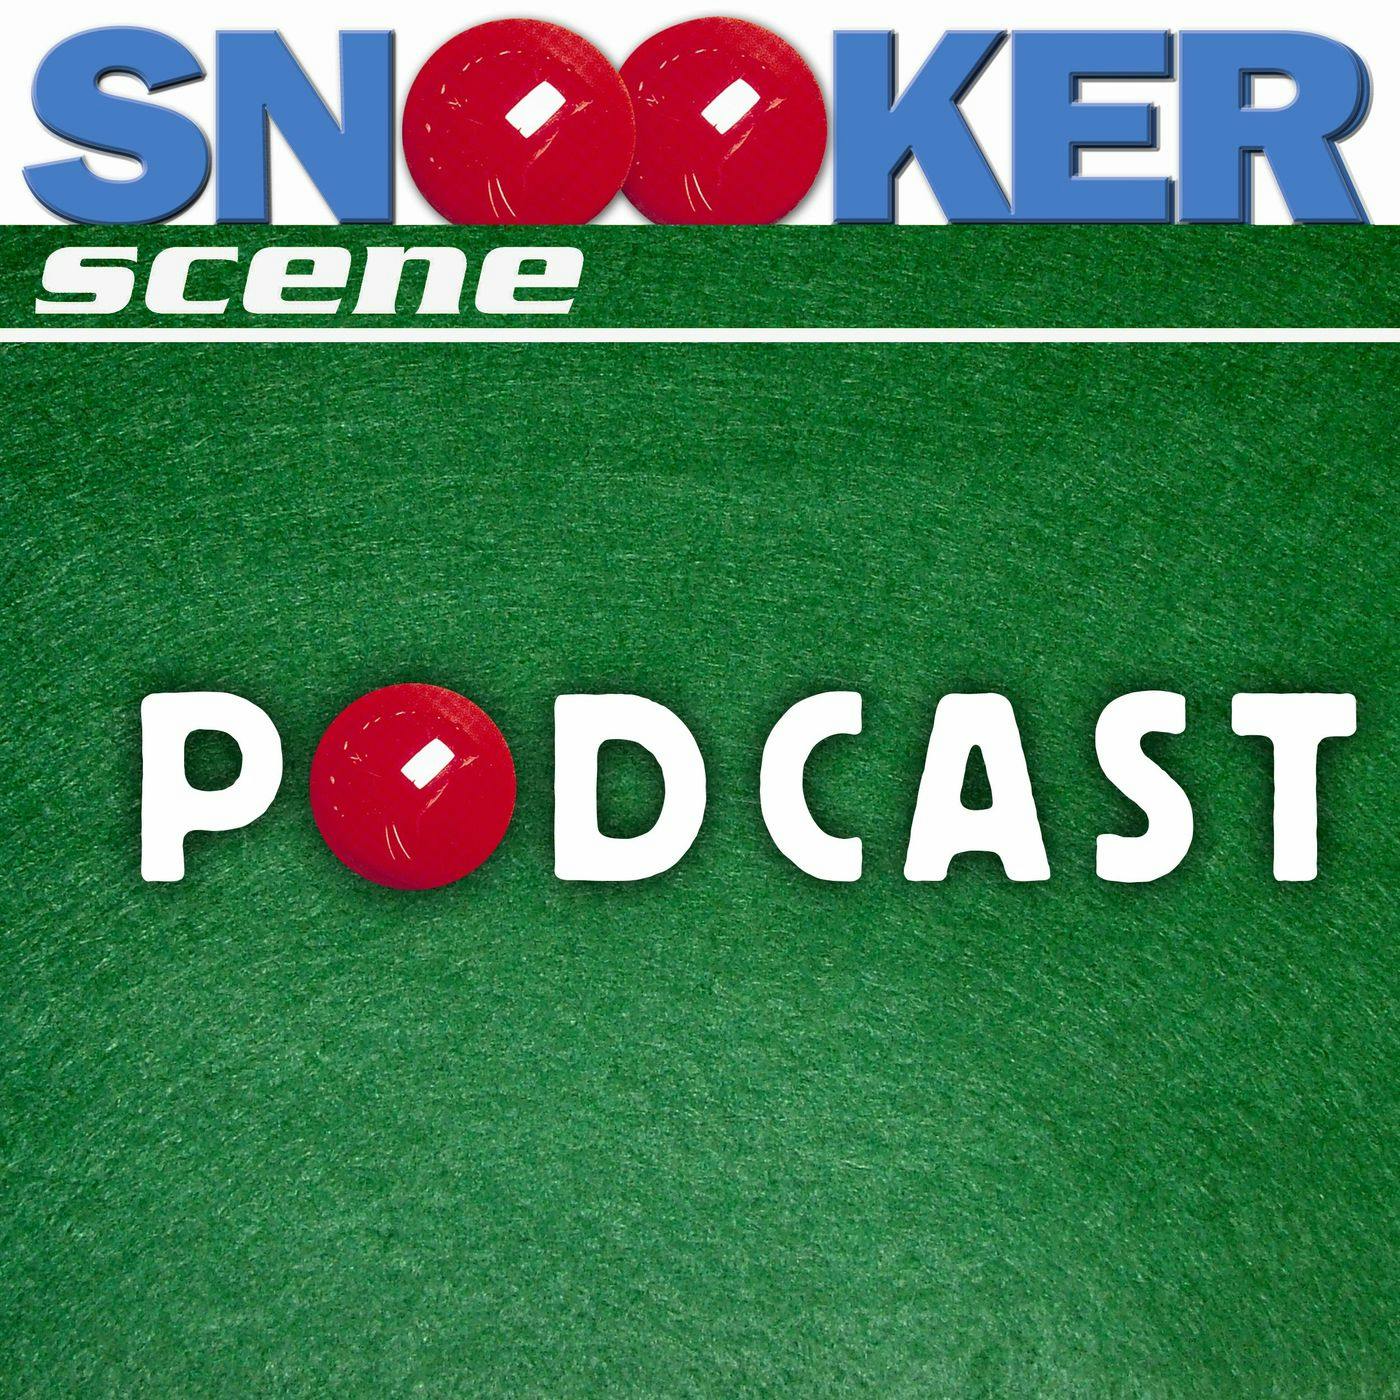 Snooker Scene Podcast episode 139 - Anti-social media